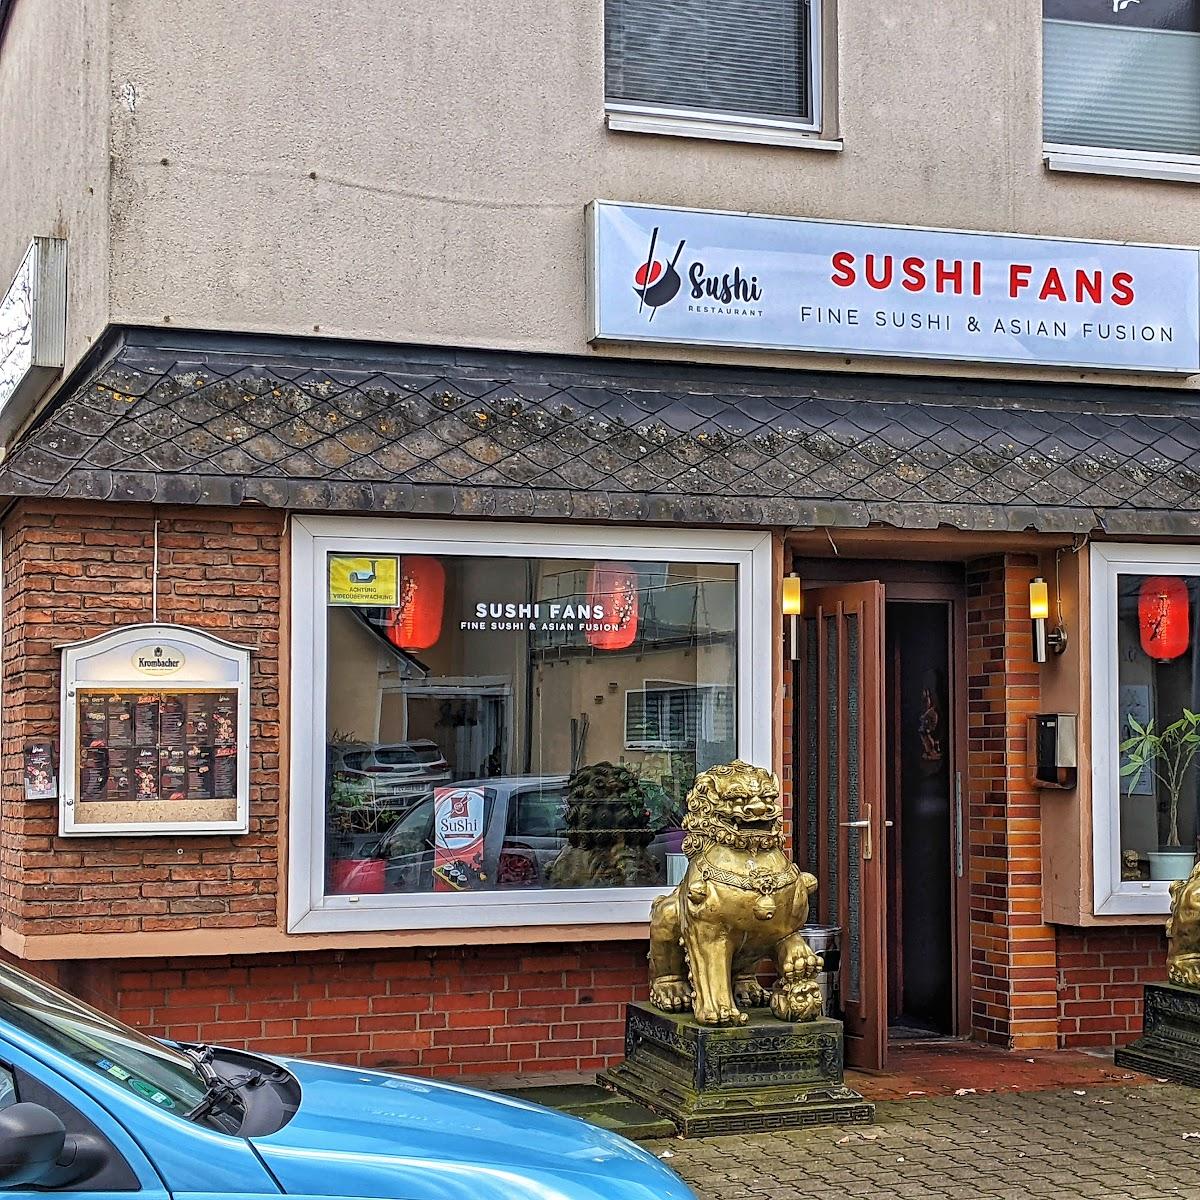 Restaurant "Sushifans" in Gifhorn